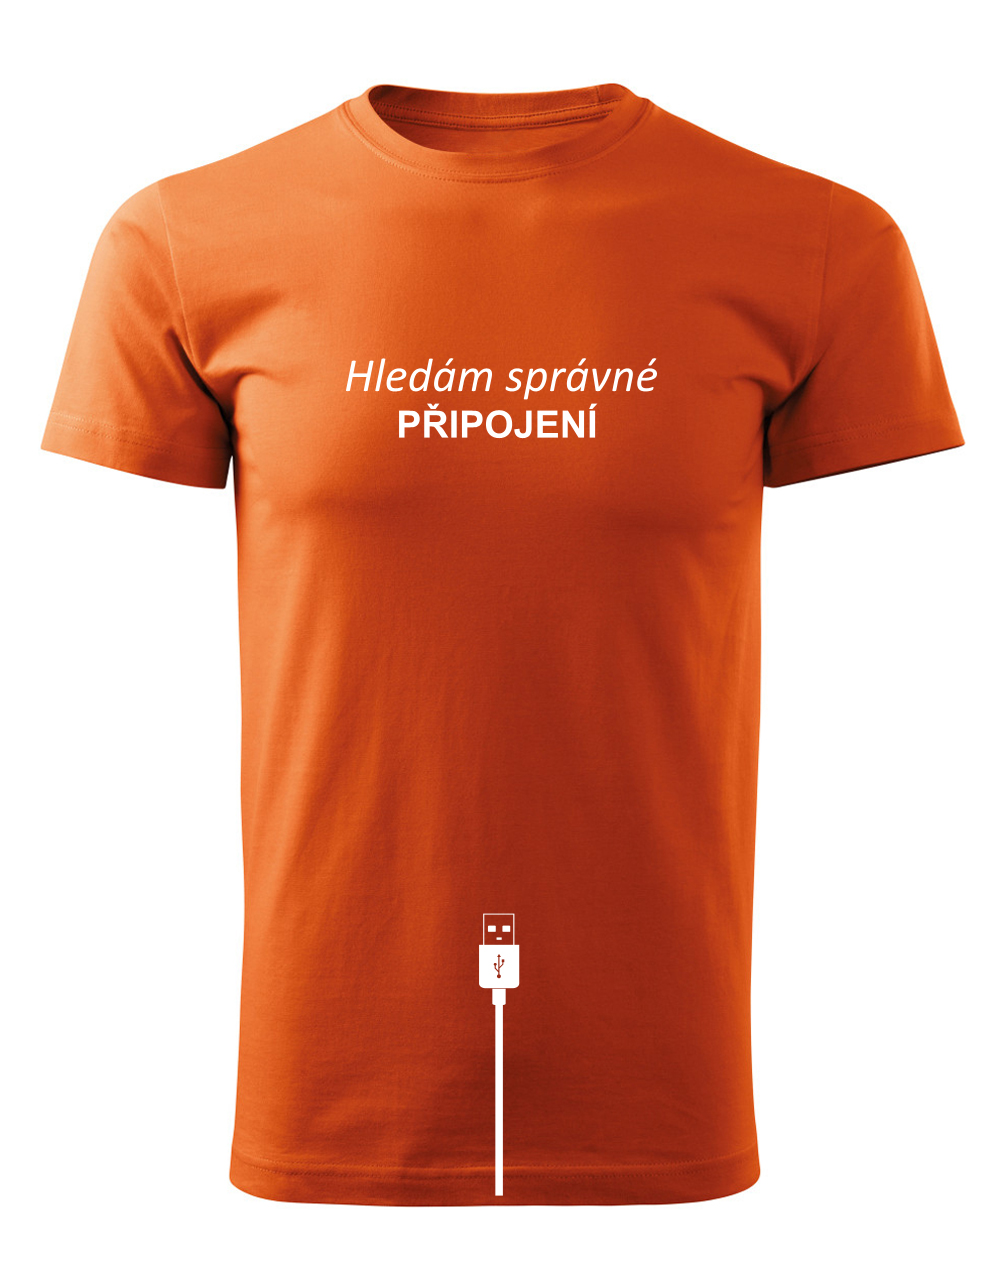 Pánské tričko s potiskem Hledám správné připojení oranžová